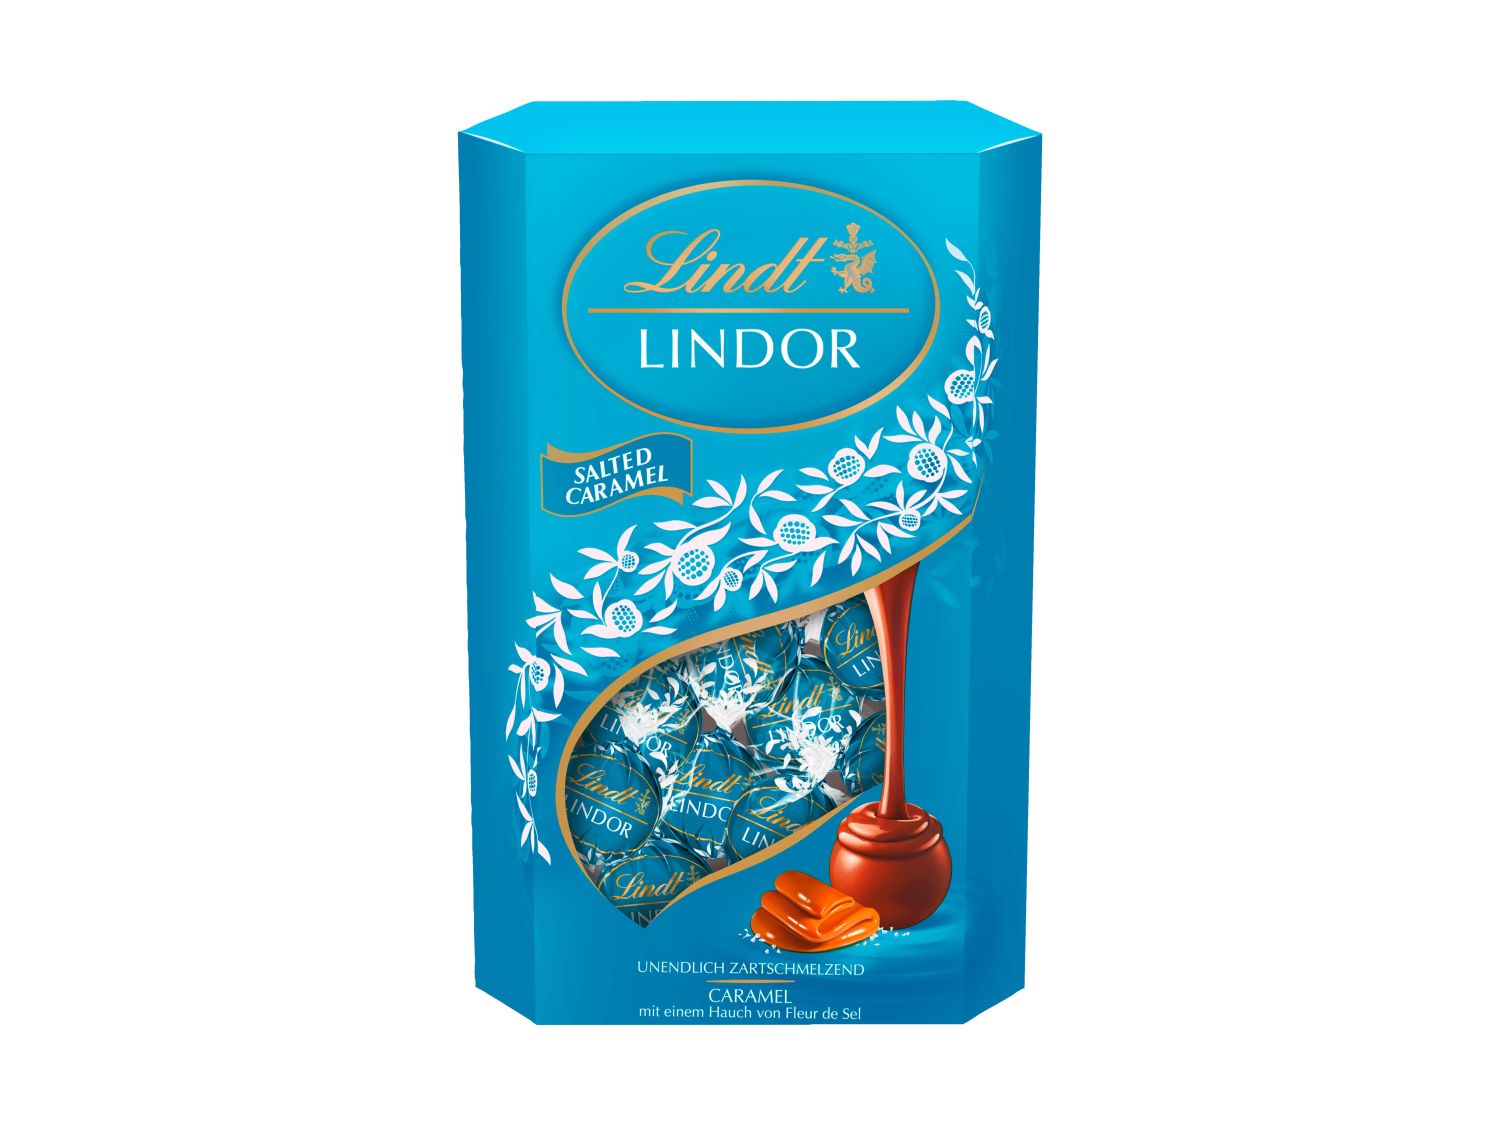 Boules caramel salé Lindor Lindt - Image 1